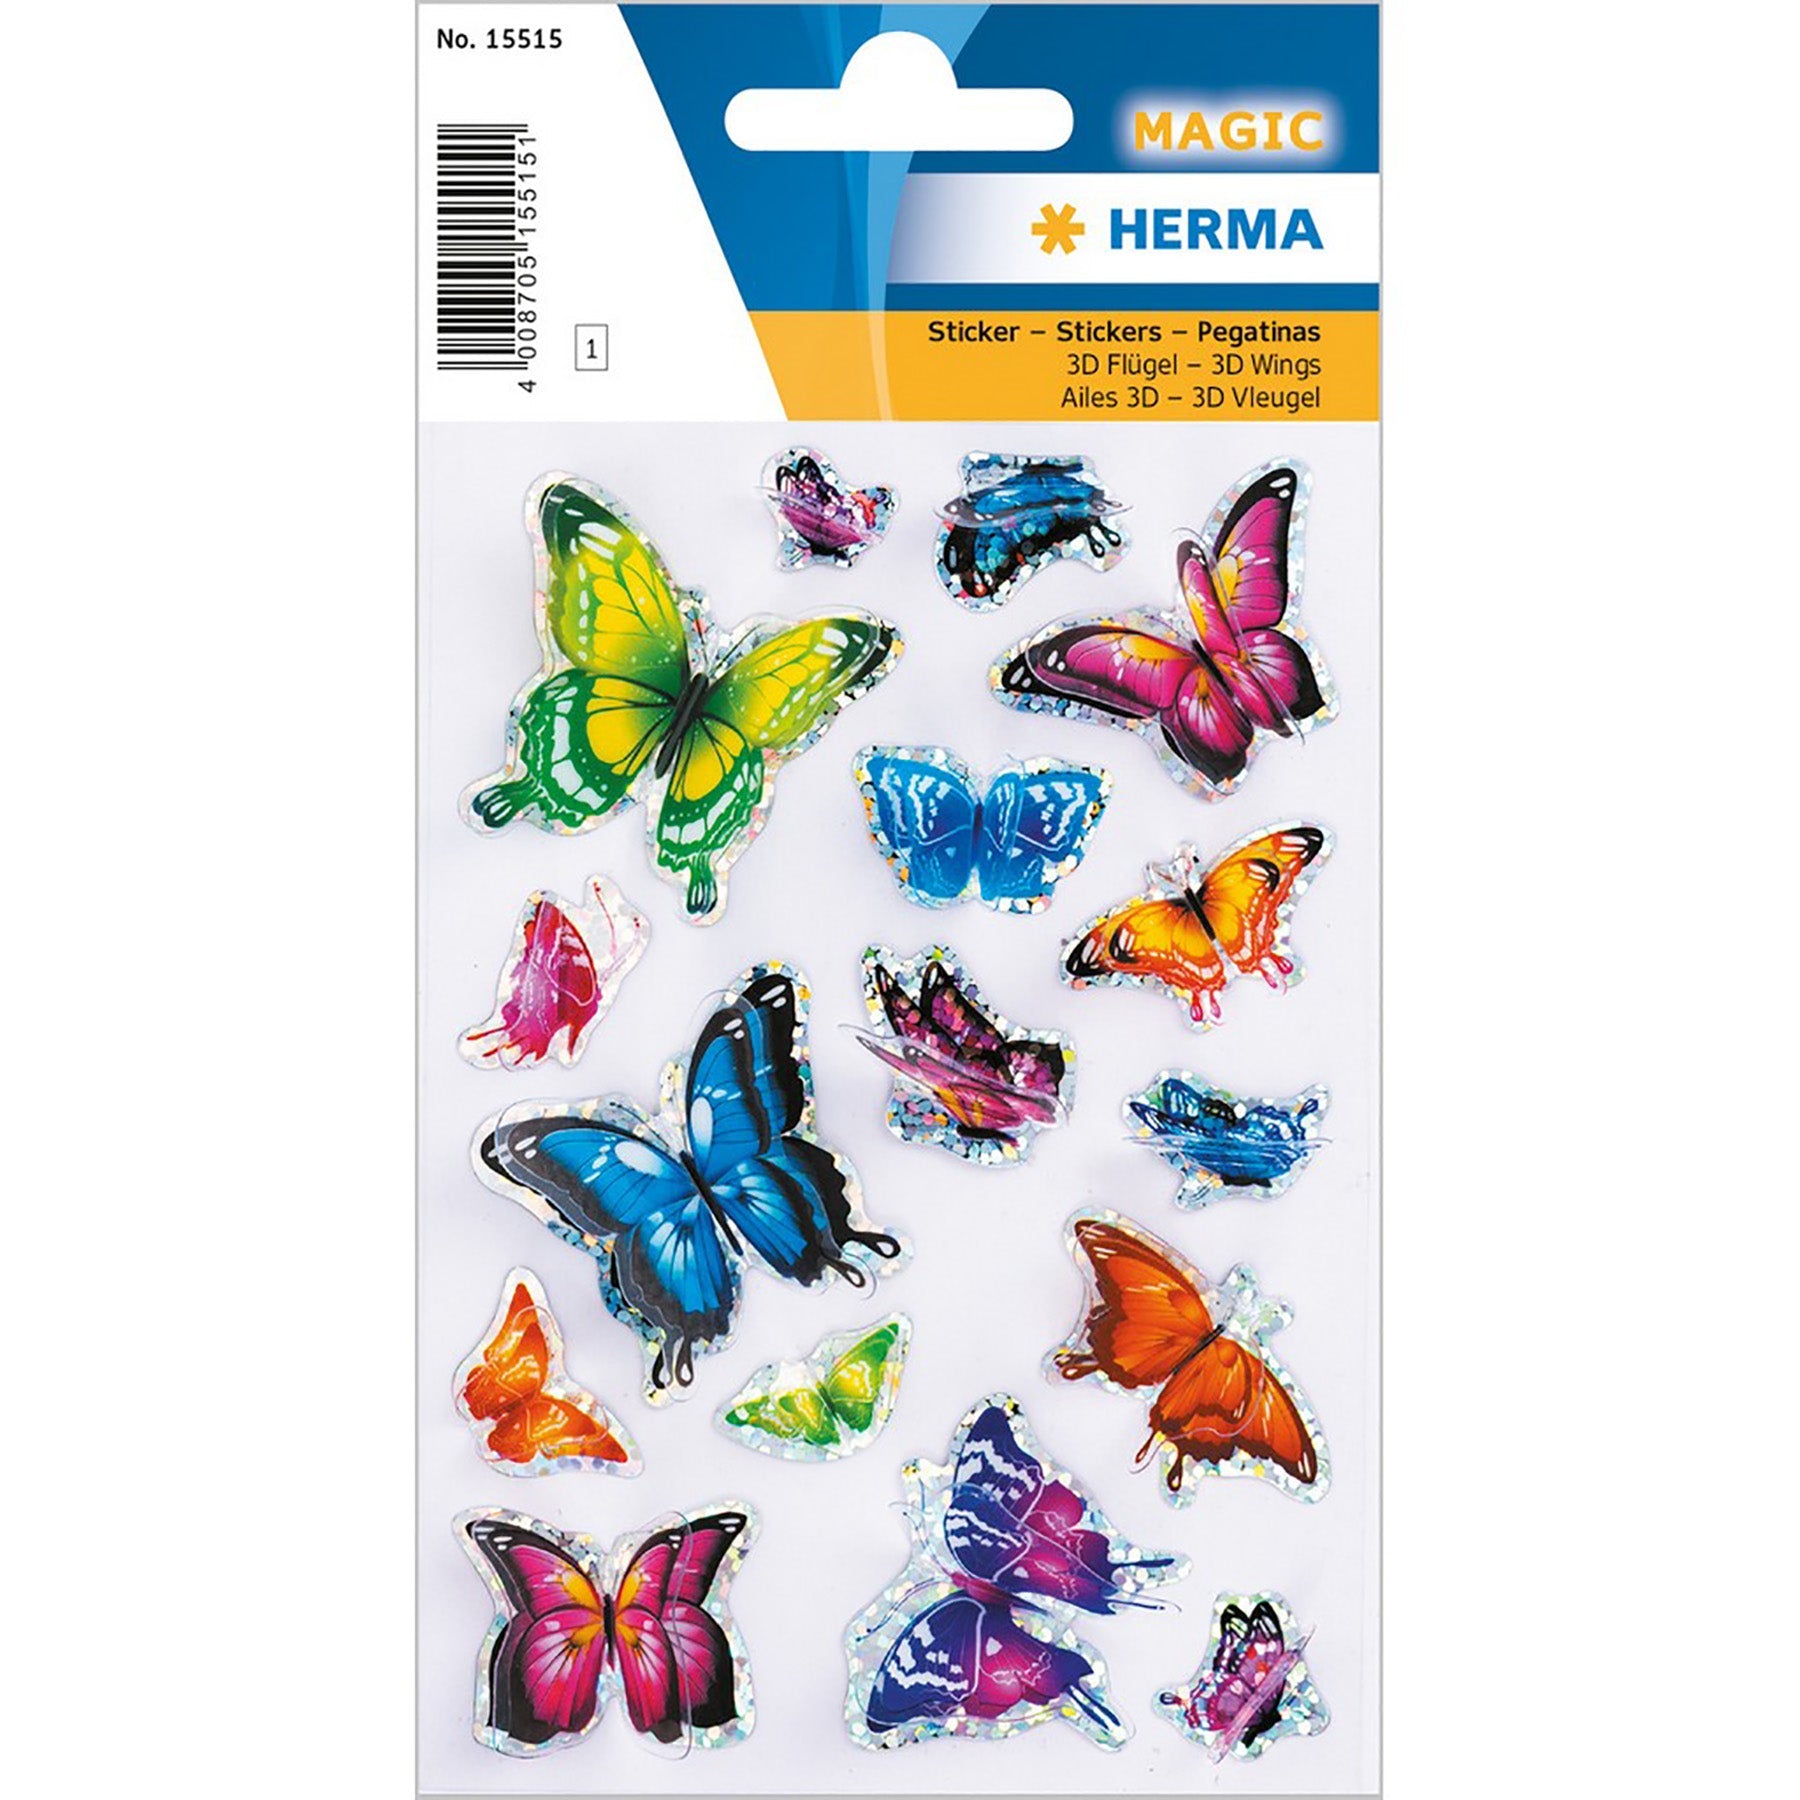 Herma Magic Stickers Butterflies 3D Wings 4.75x3.1in Sheet